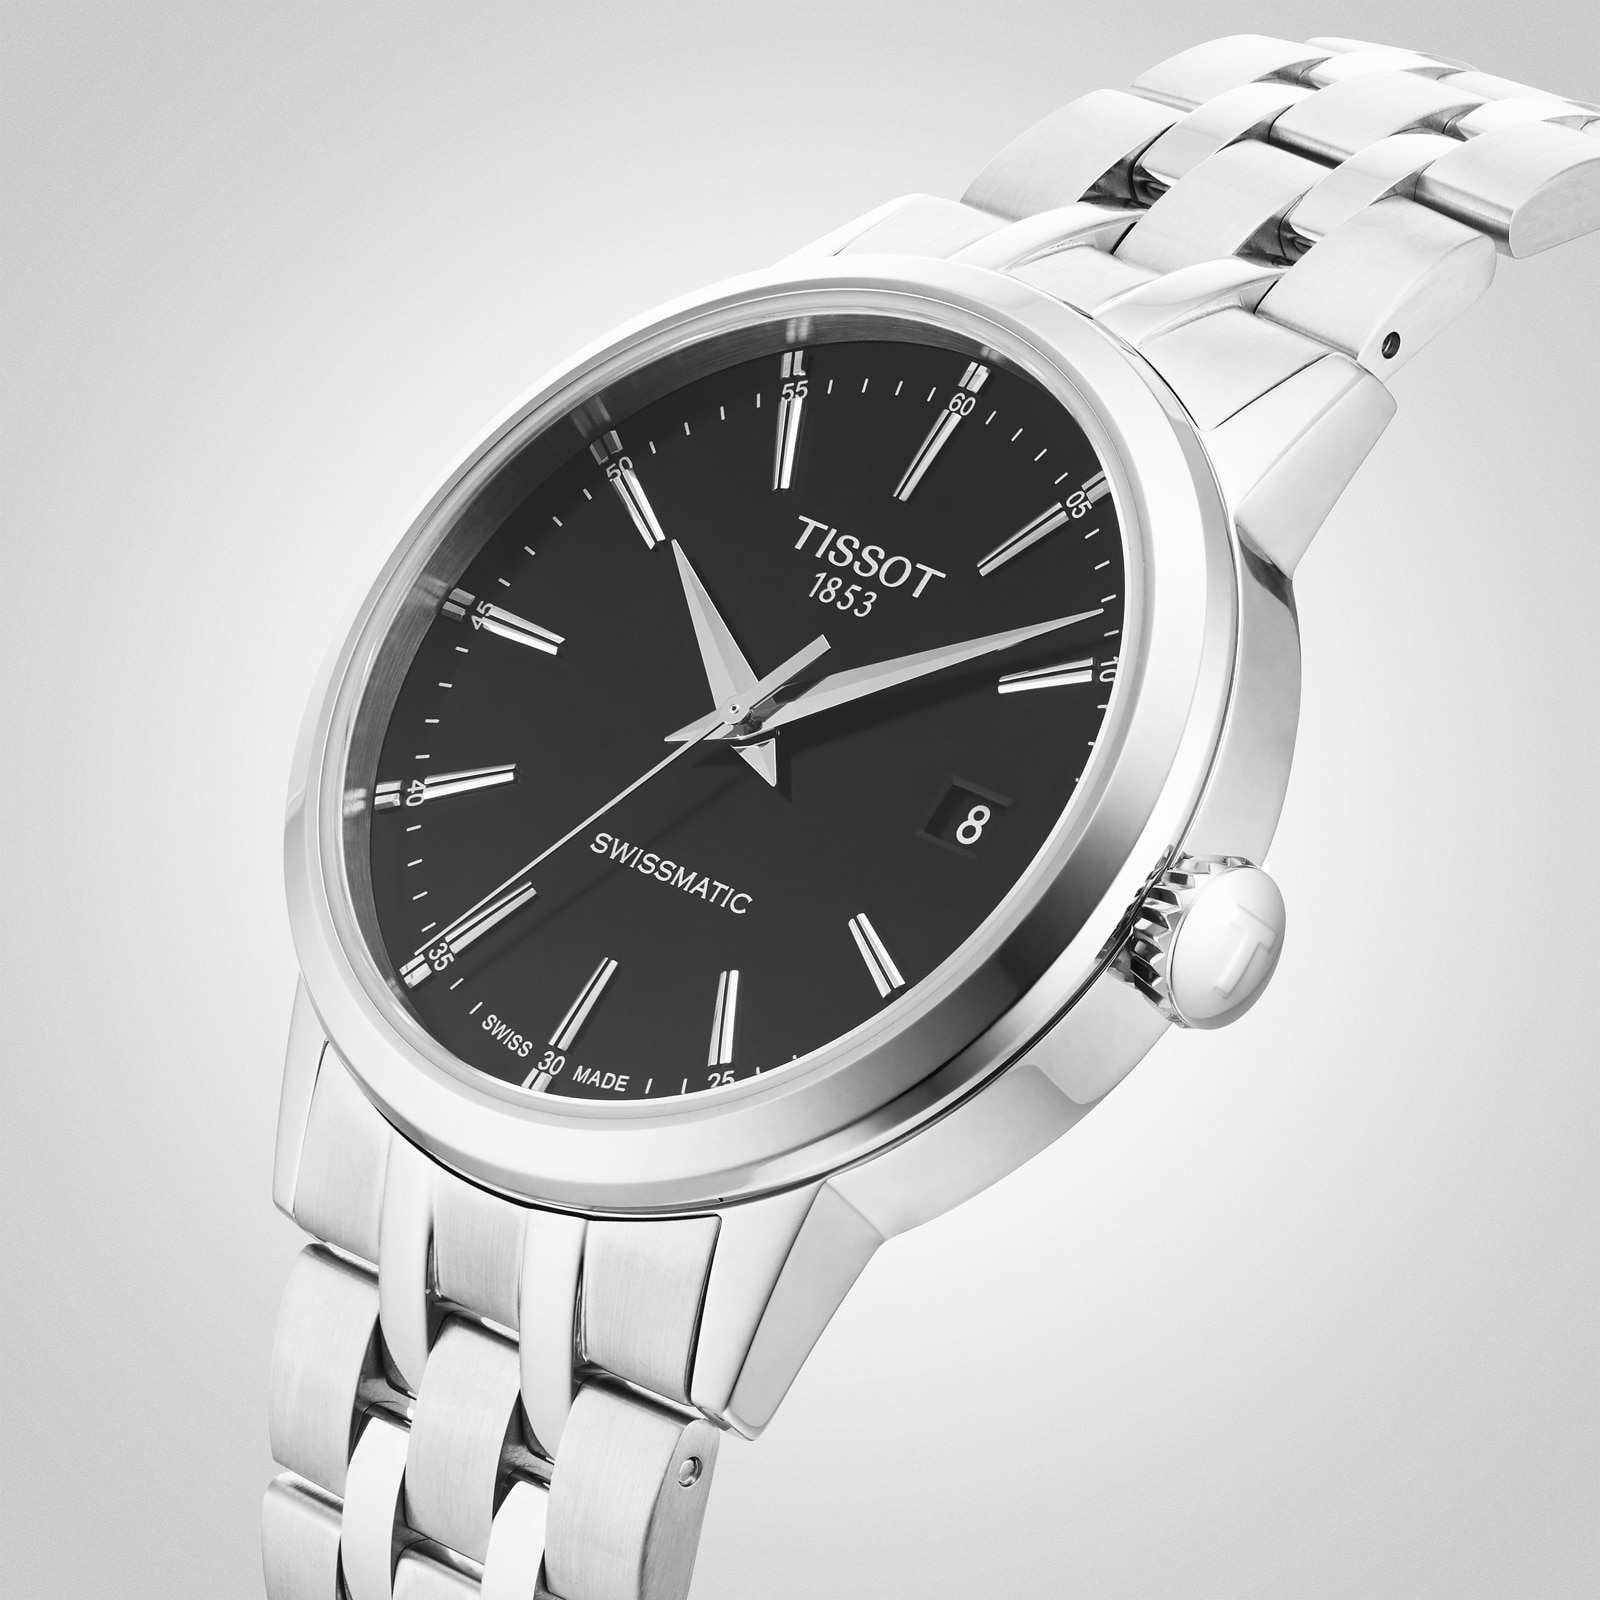 Men's LIGE 'Dream' Stainless Steel Water Resistant Wrist Watch | eBay